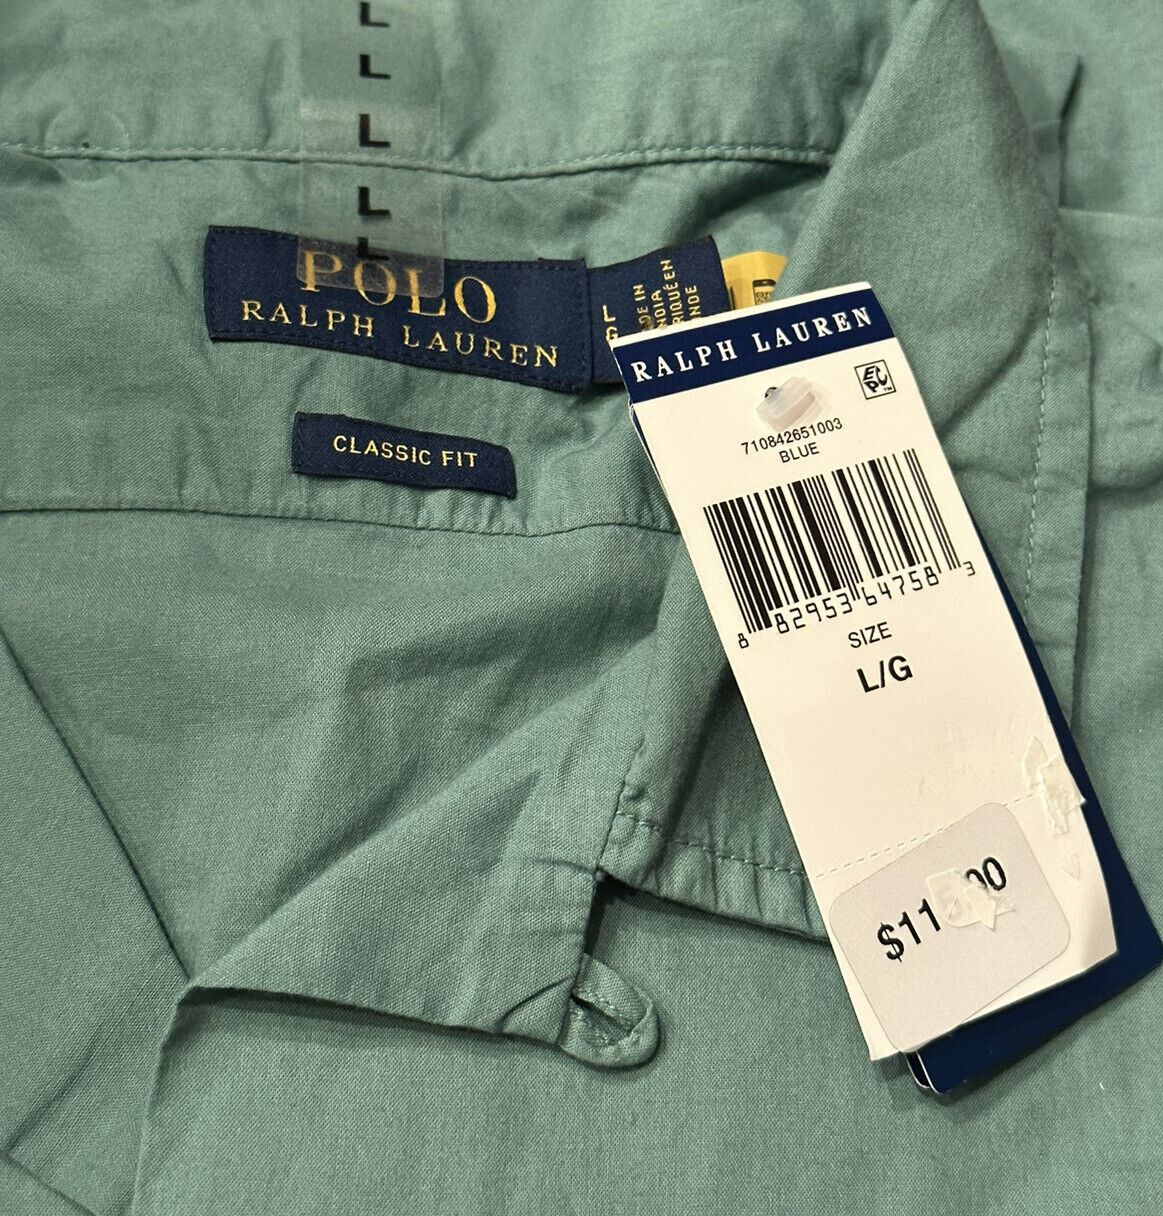 Мужская зеленая классическая рубашка с коротким рукавом NWT Polo Ralph Lauren, большая, производство Индия